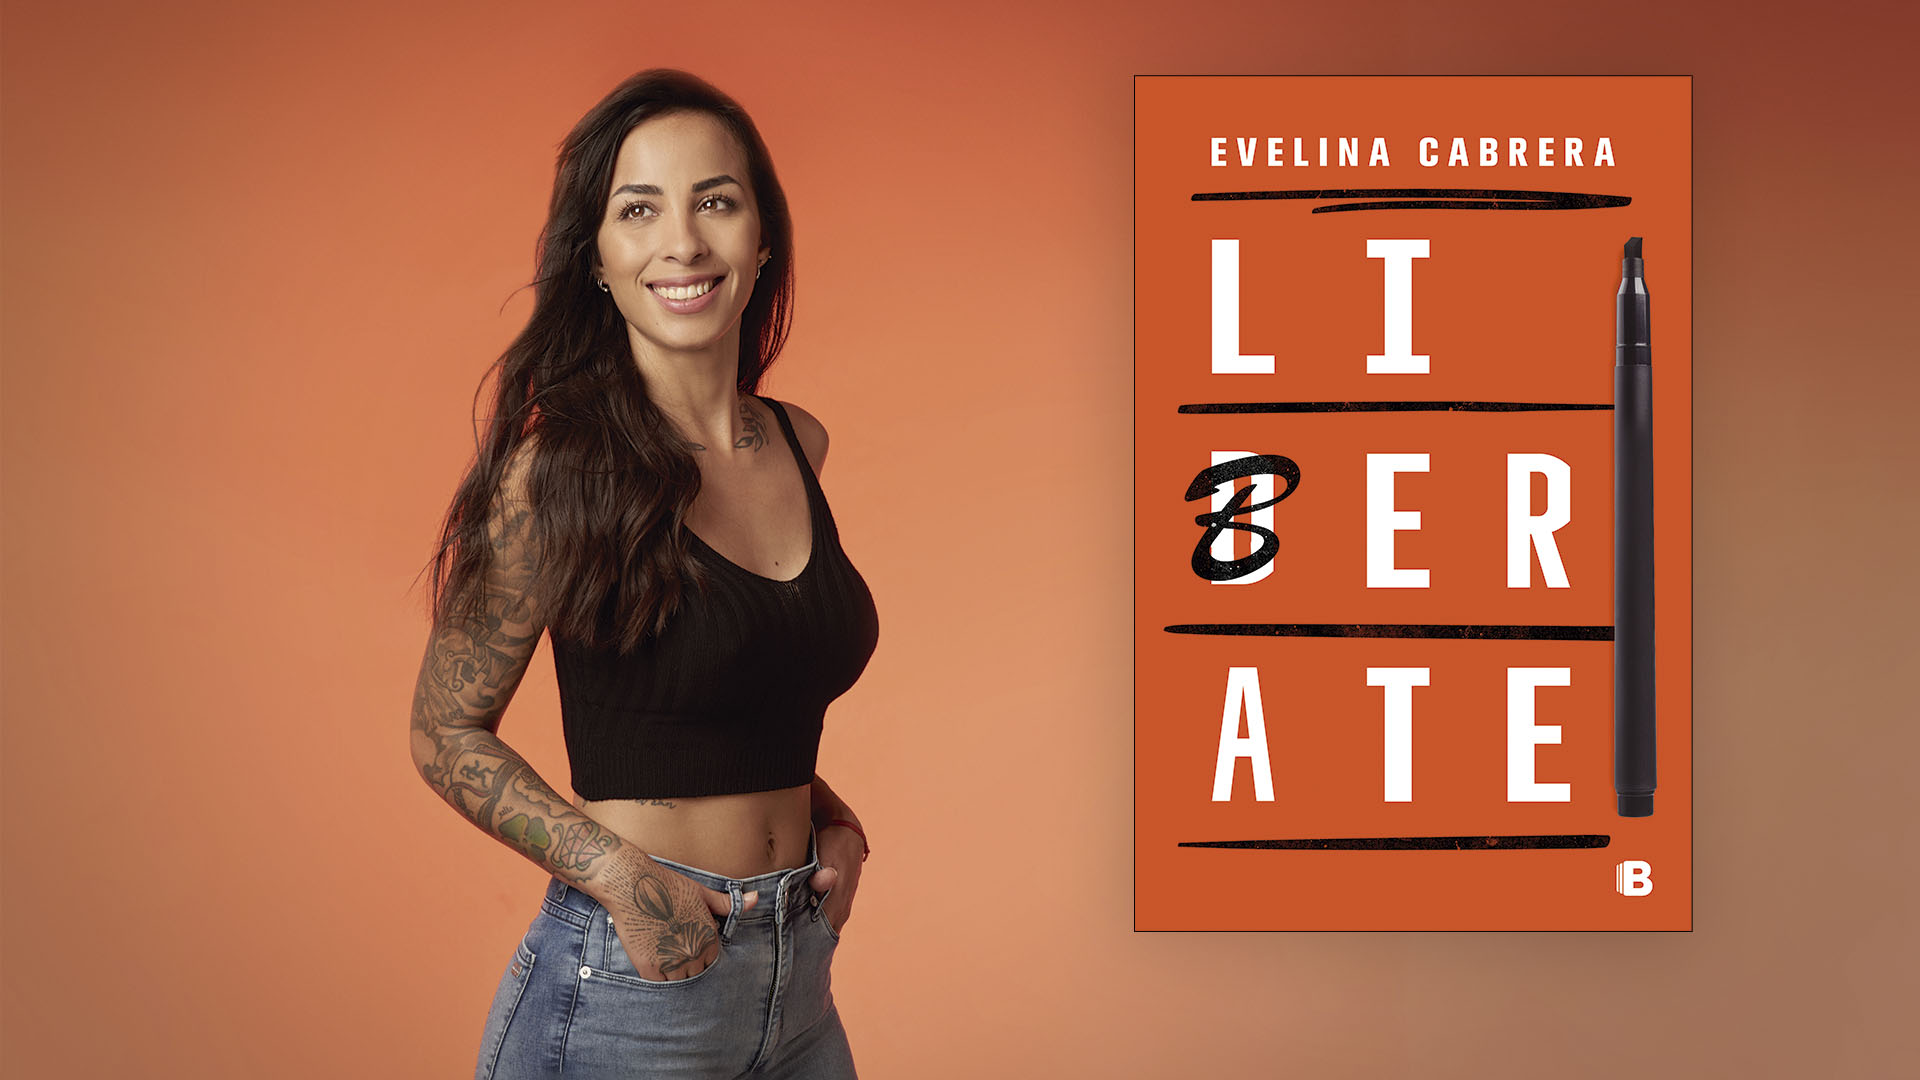 "Liberate" es el tercer libro de Evelina Cabrera. El primero es su biografía, "Altanegra", y el segundo se llama "Juana, la futbolista", cuentos infantiles  